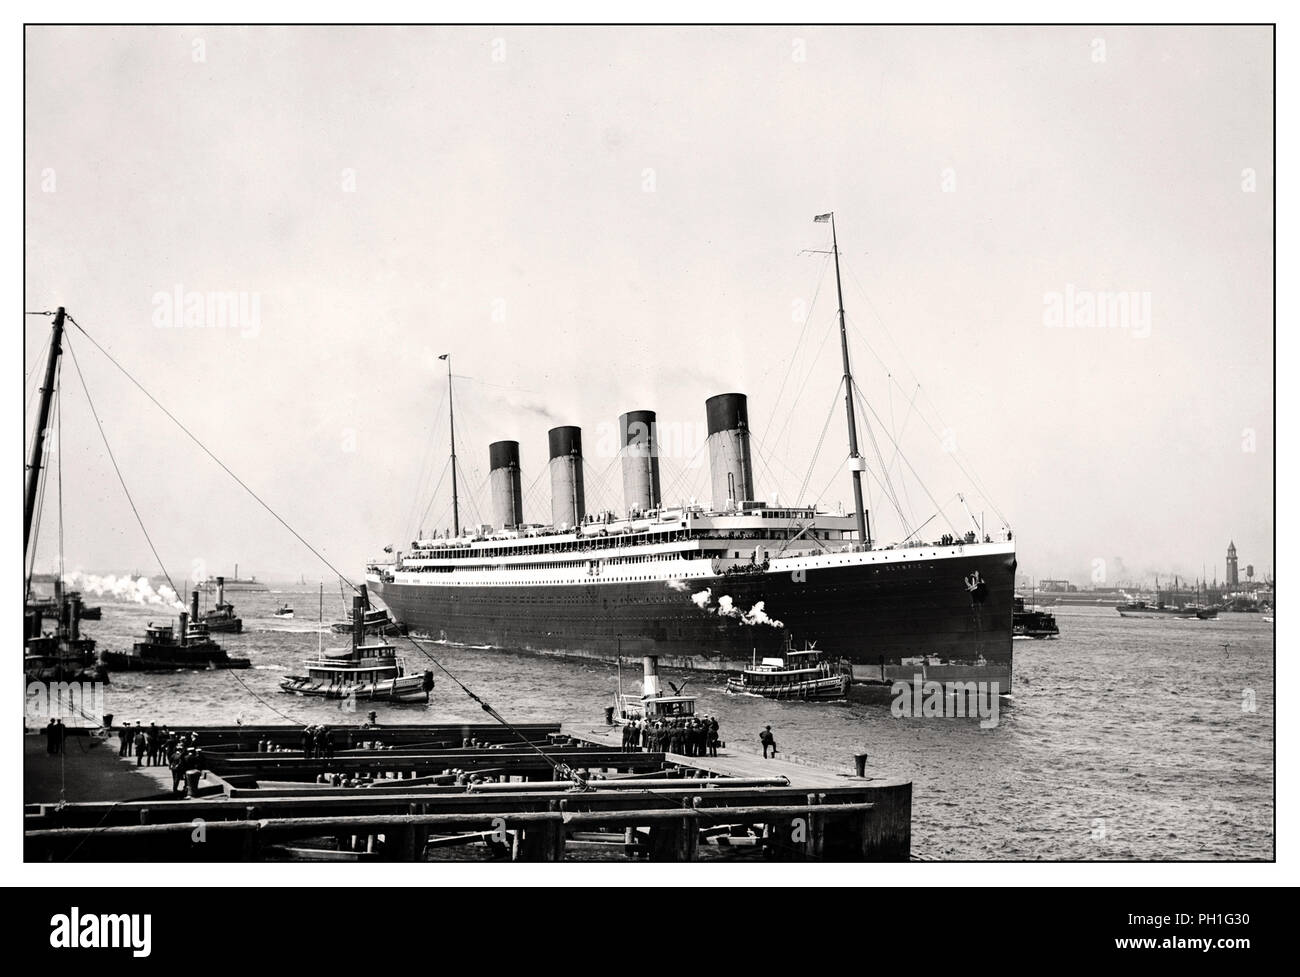 Nave gemella della RMS Olympic Ocean Liner d'epoca del RMS Titanic in arrivo a New York nel giugno 1911 durante il suo viaggio inaugurale navigando sotto la bandiera della White Star Line Foto Stock